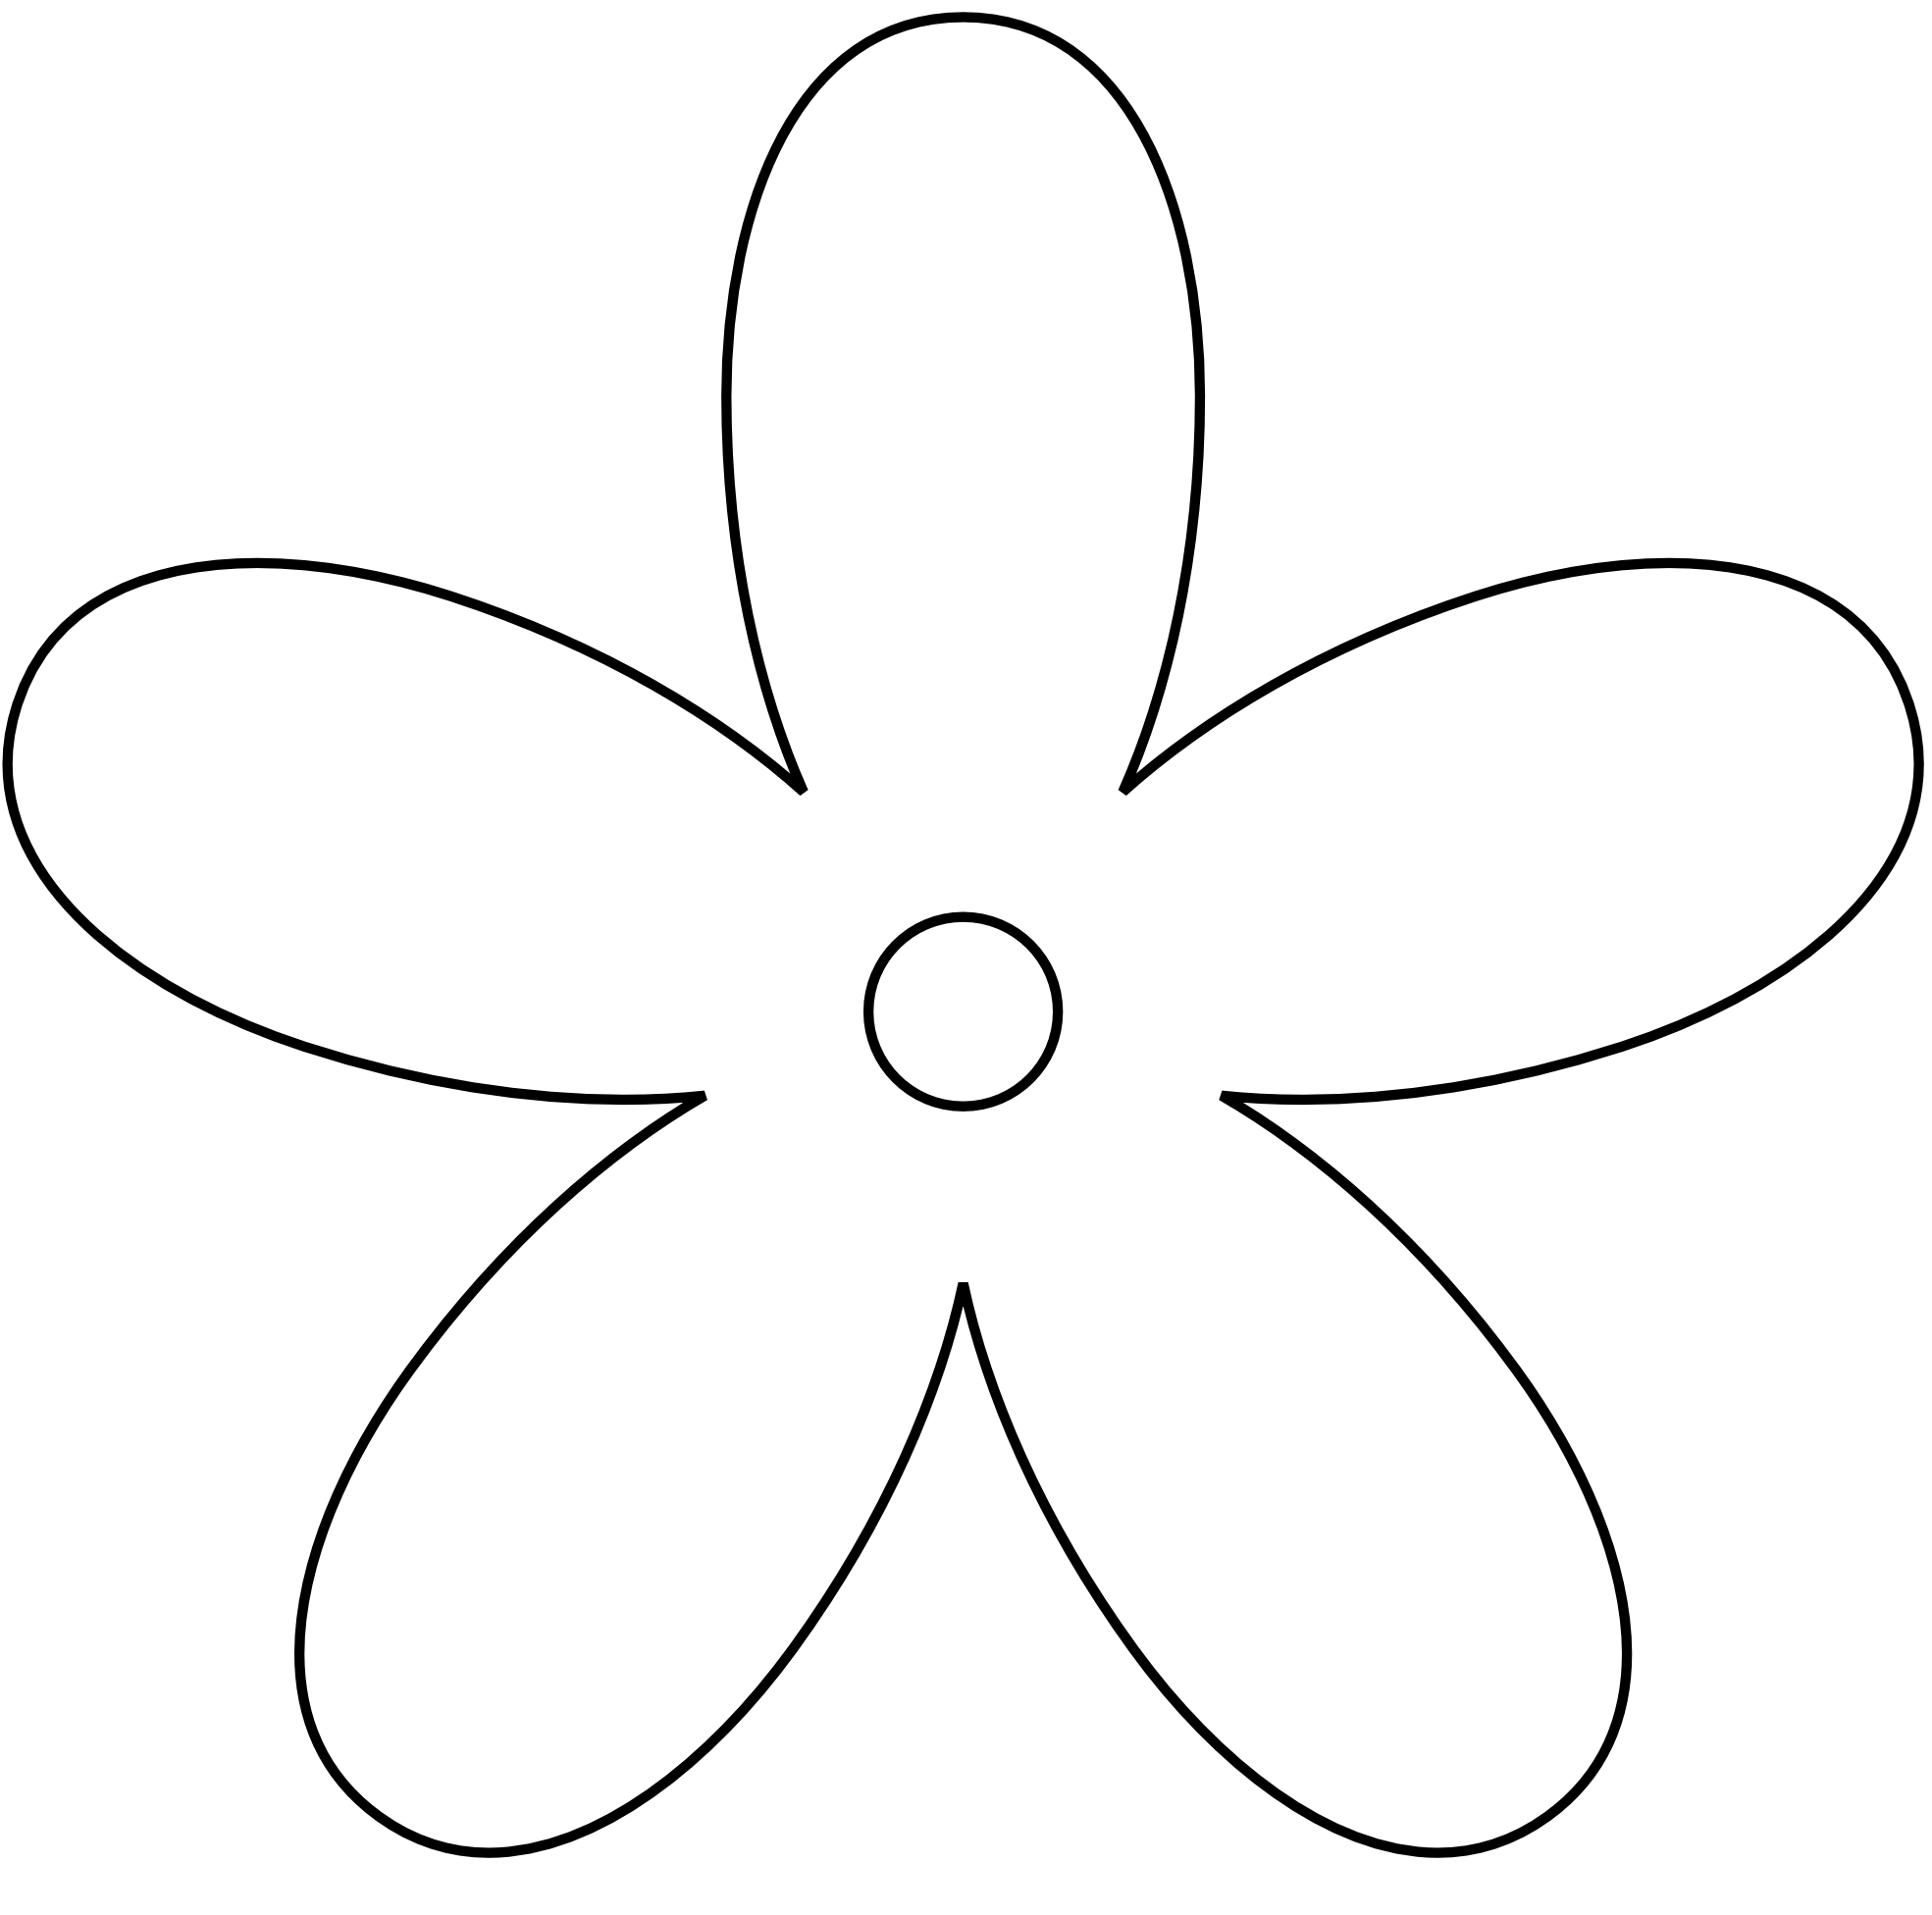 Flowers For > Flower Black And White Clip Art